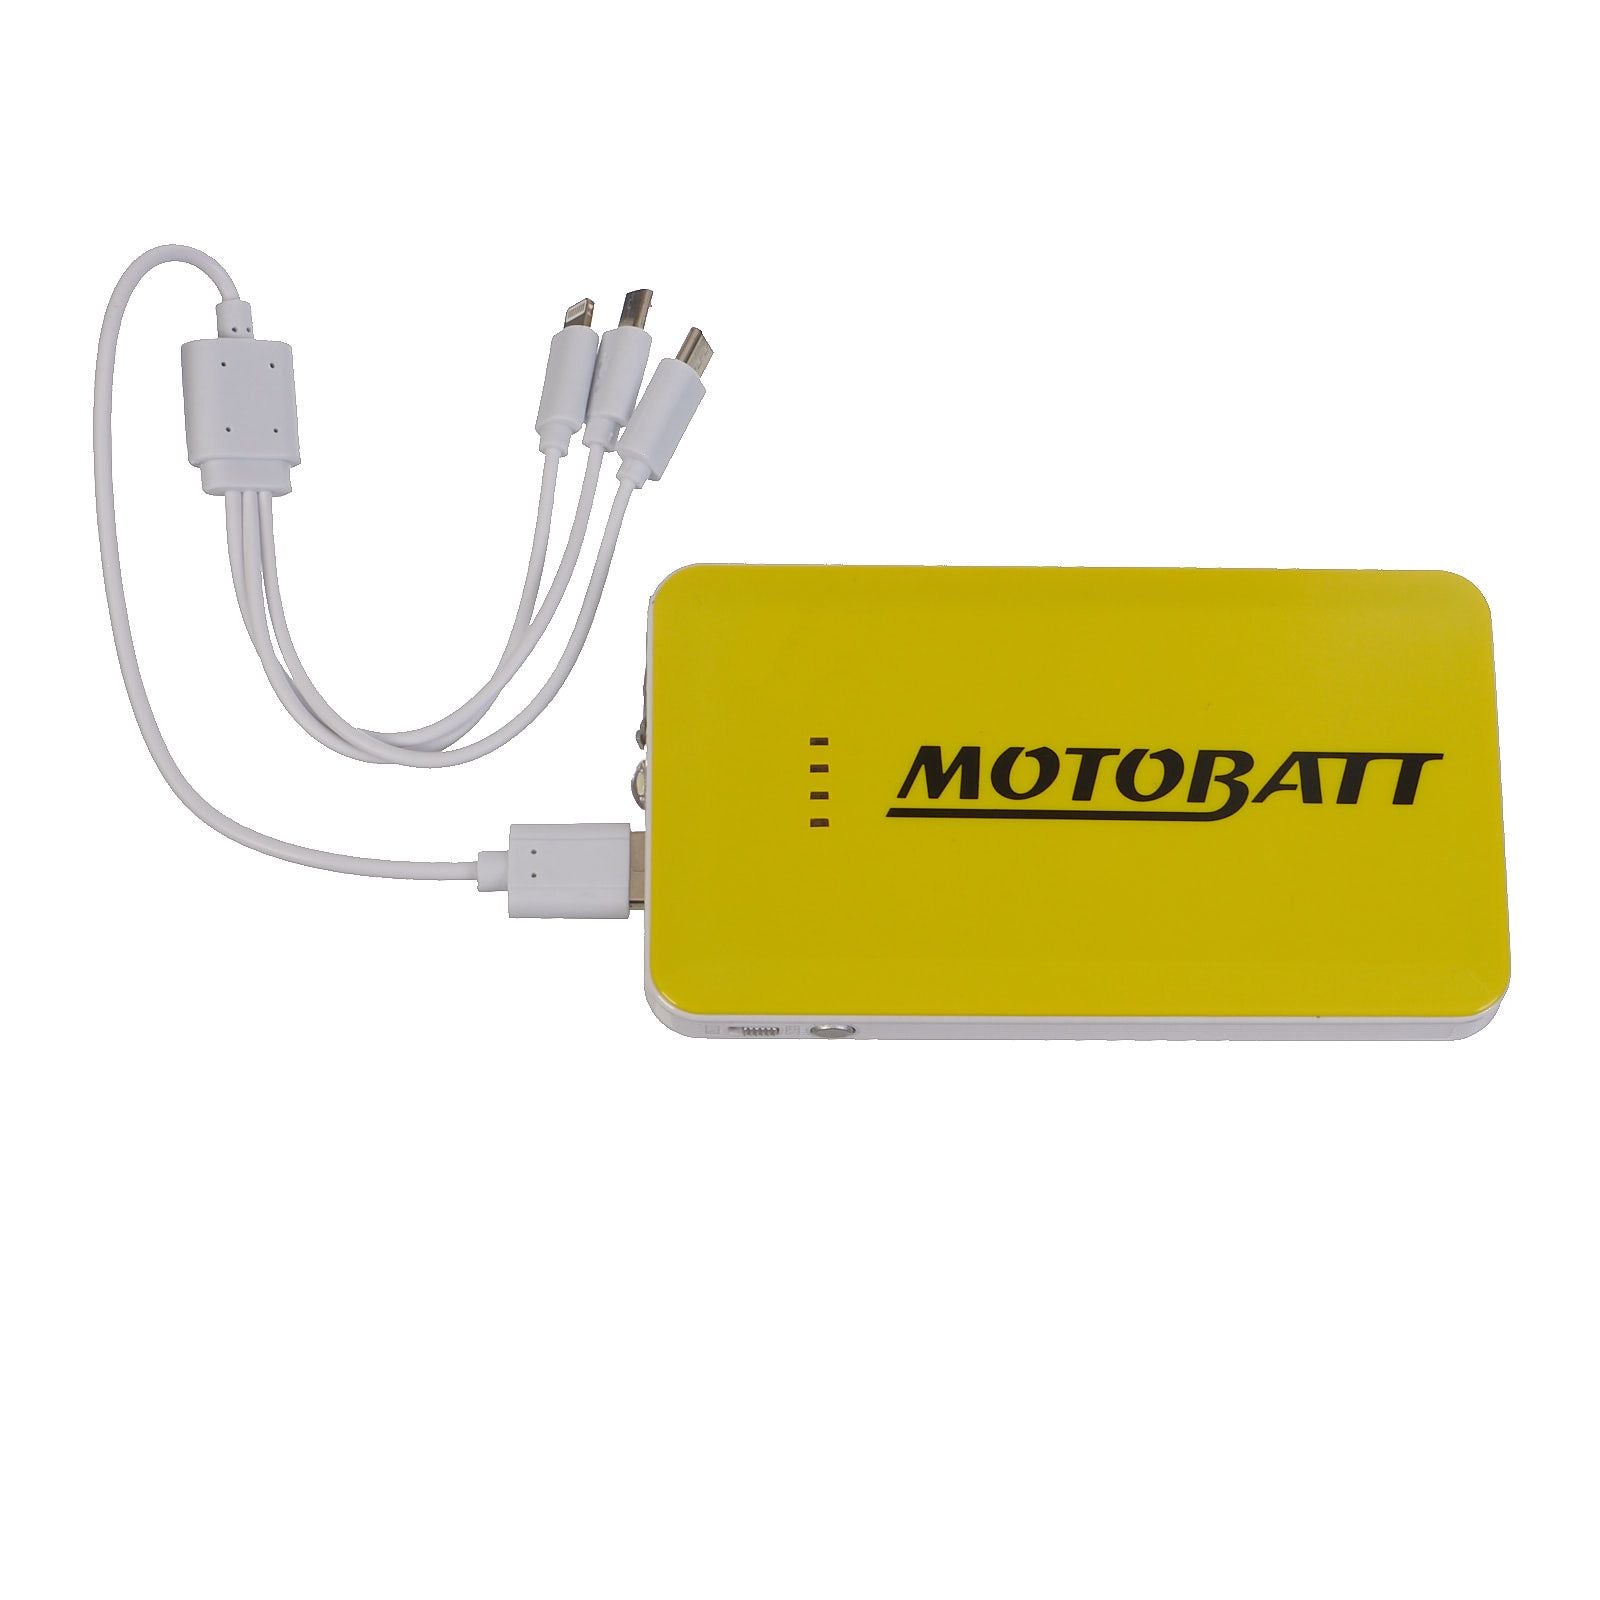 New MOTOBATT Lithium Jump Starter 7500 & Phone Charger #MBZLJS7500